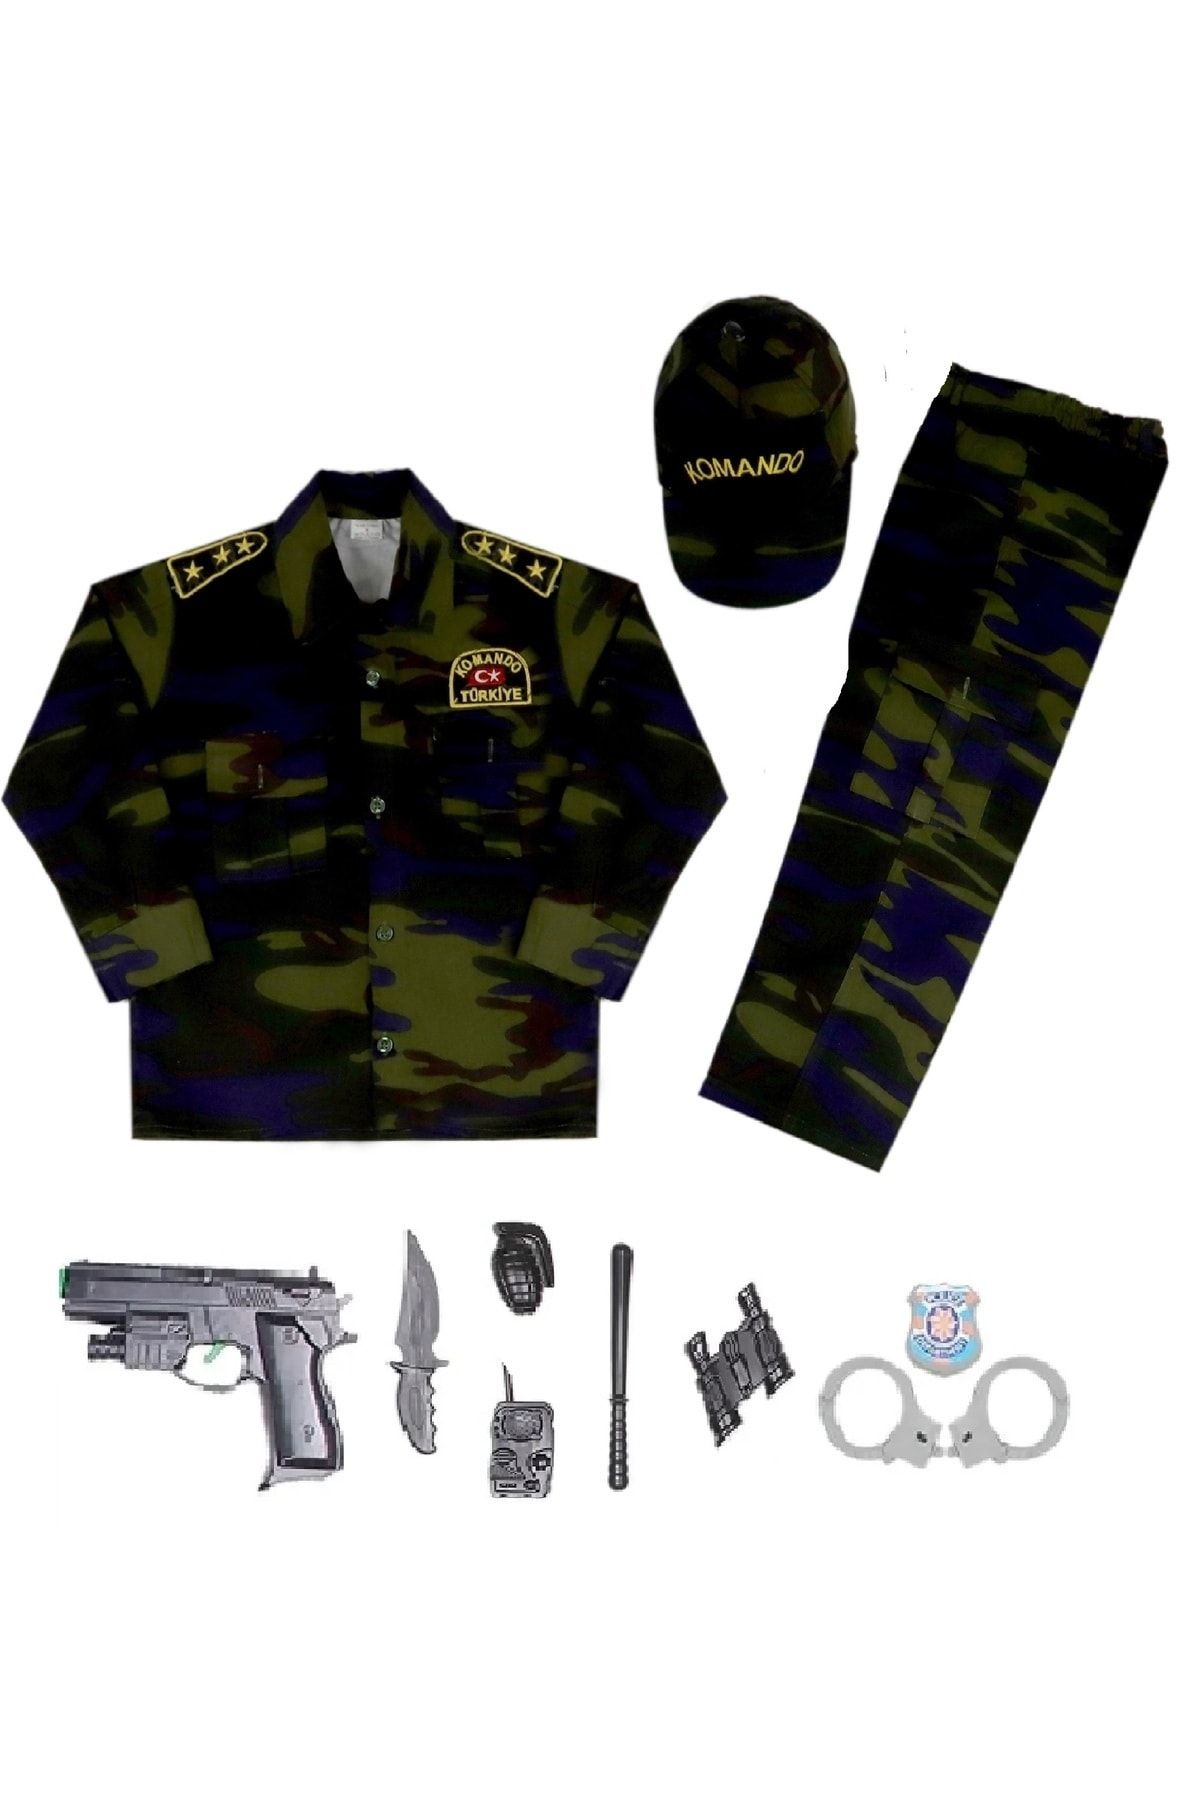 Lizsa Çocuk Haki Asker Kostümü Çocuk Haki Asker Kıyafeti